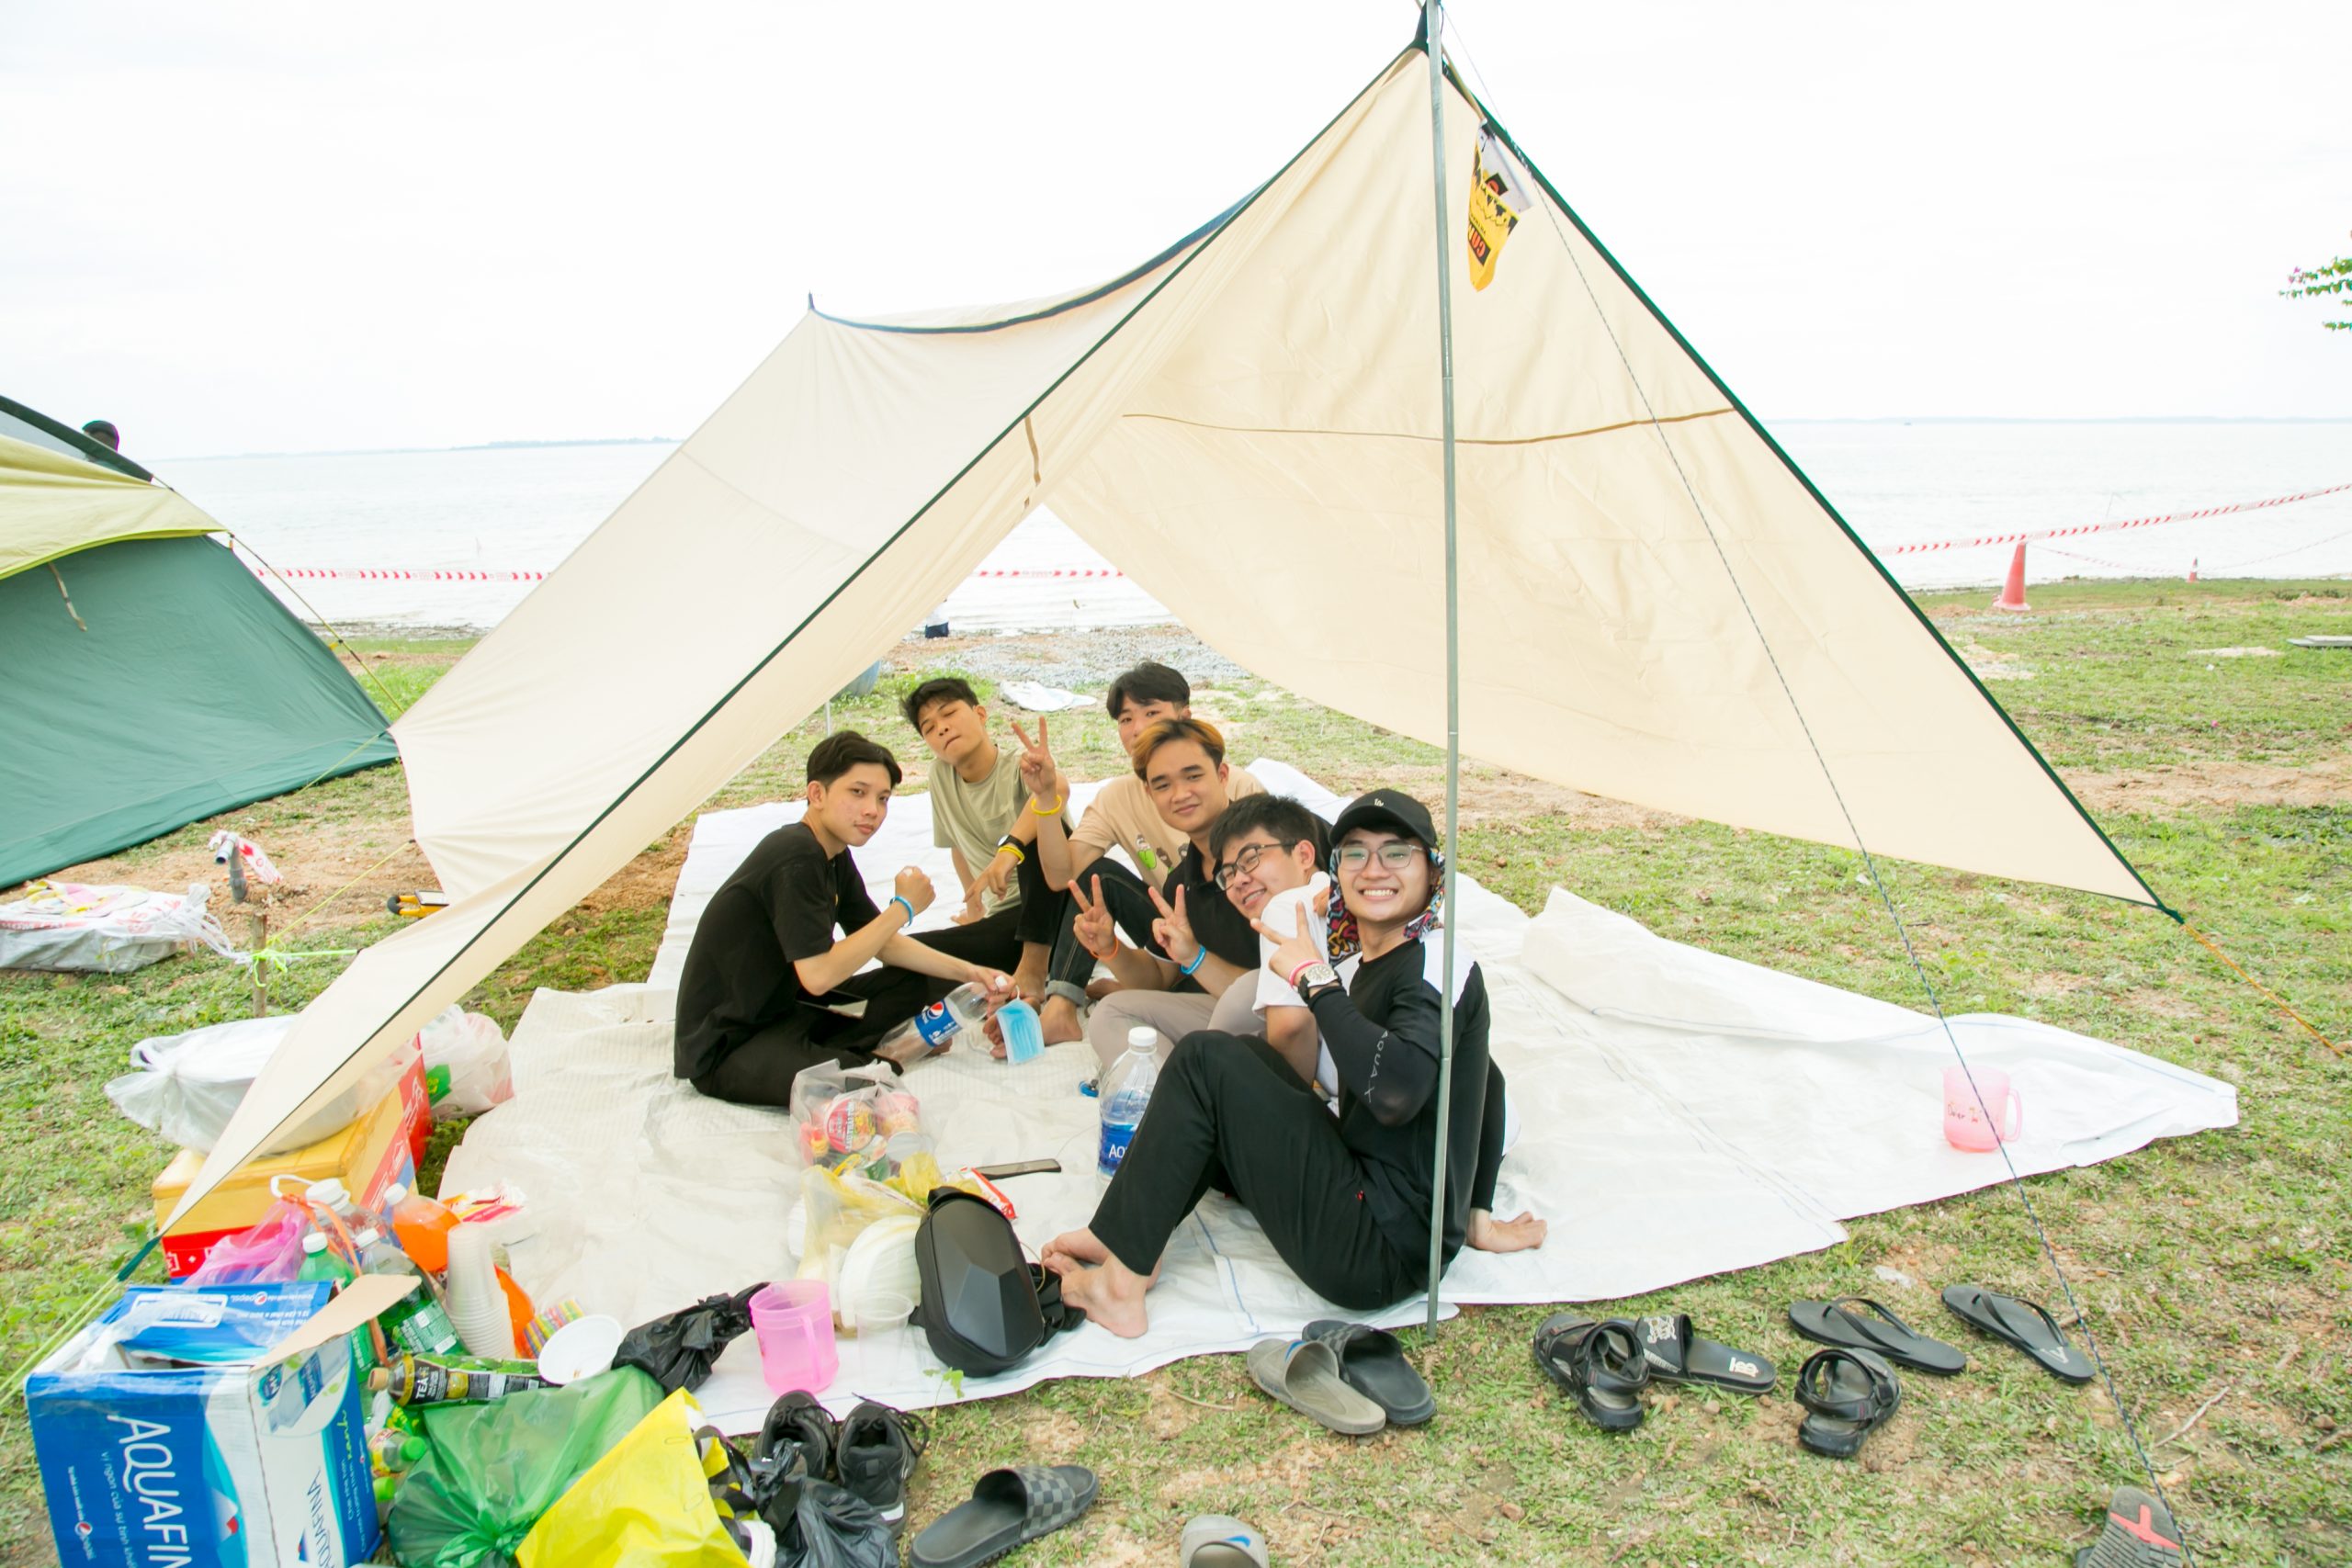 Lễ hội cắm trại Việt Nam - CampFest do Kỷ Nguyên tổ chức thu hút sự tham gia của các bạn trẻ lẫn các anh chị trung niên, chứng tỏ sức hút của hình thức camping phù hợp với mọi đối tượng